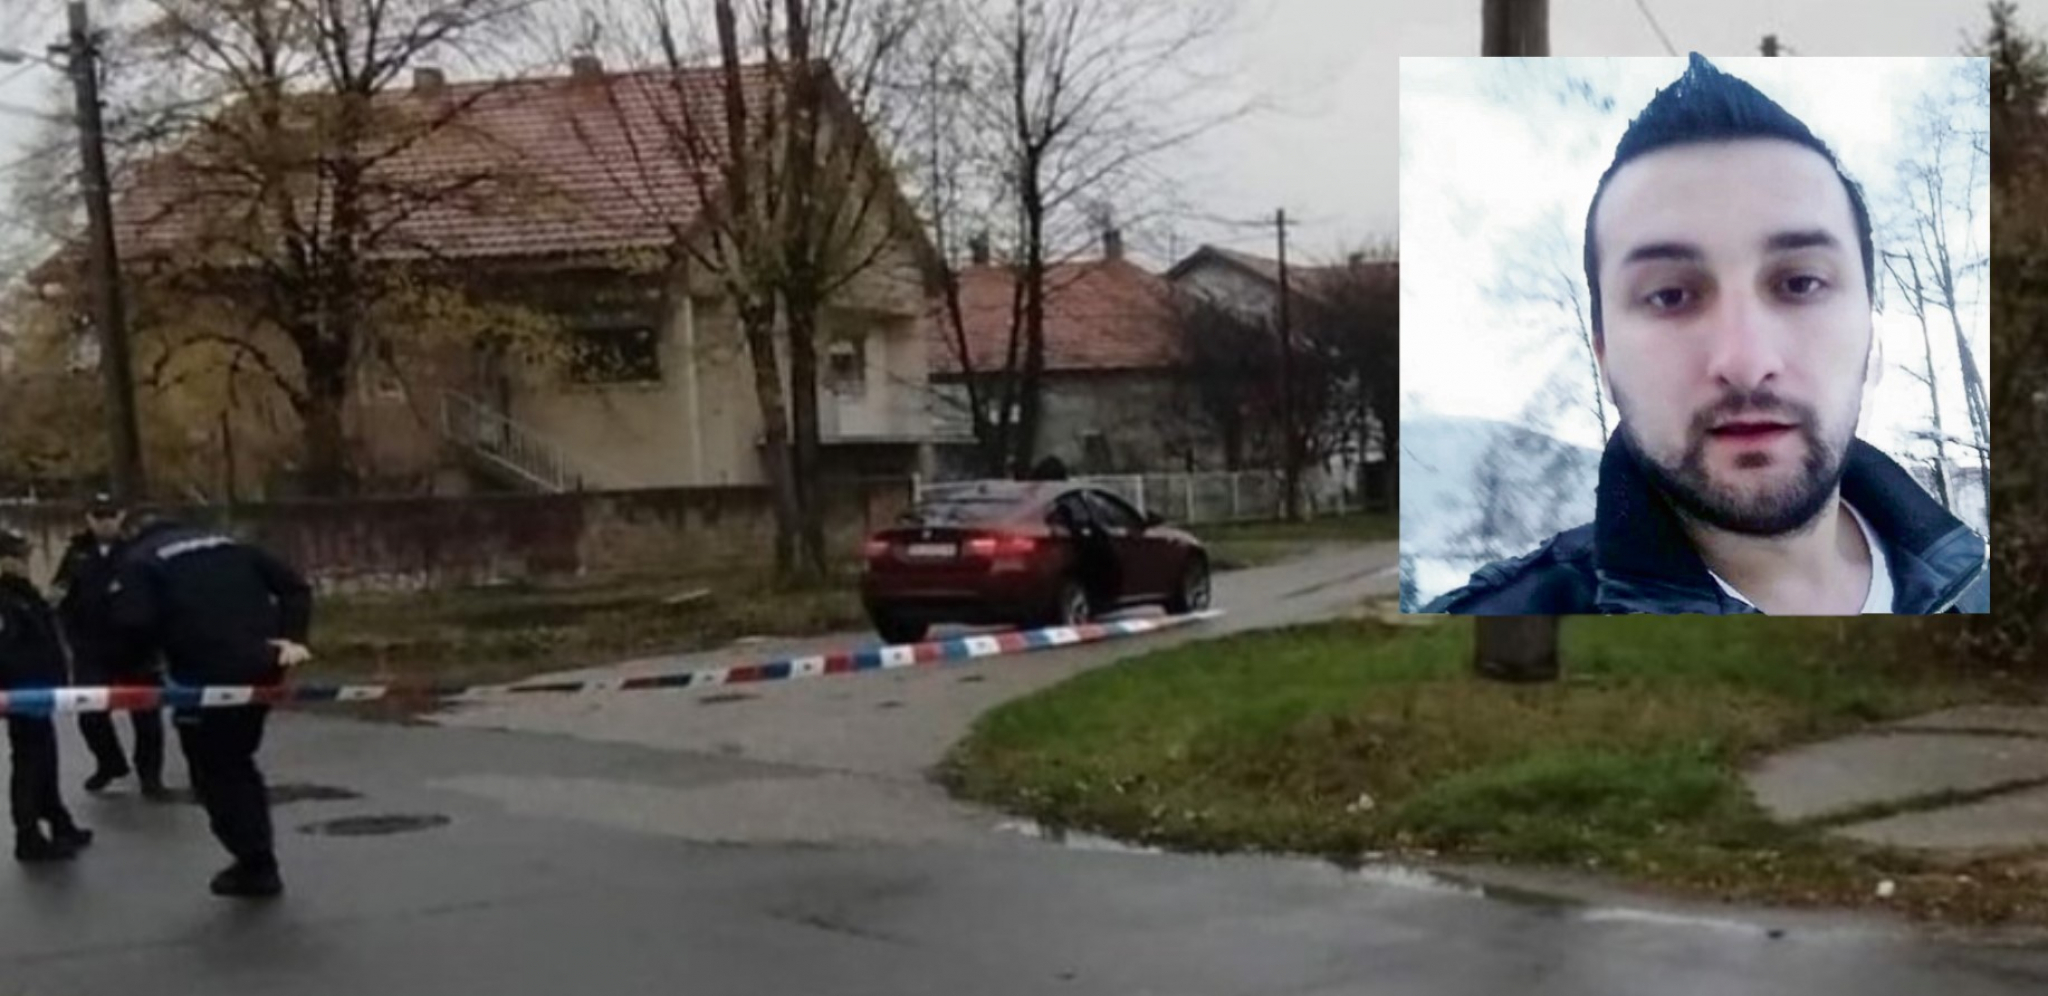 IZREŠETAN U BMW-U ZBOG 90.000 EVRA Kikinda sasuo rafal u Crnogorca u Ugrinovcima, otkriven i motiv! (FOTO)